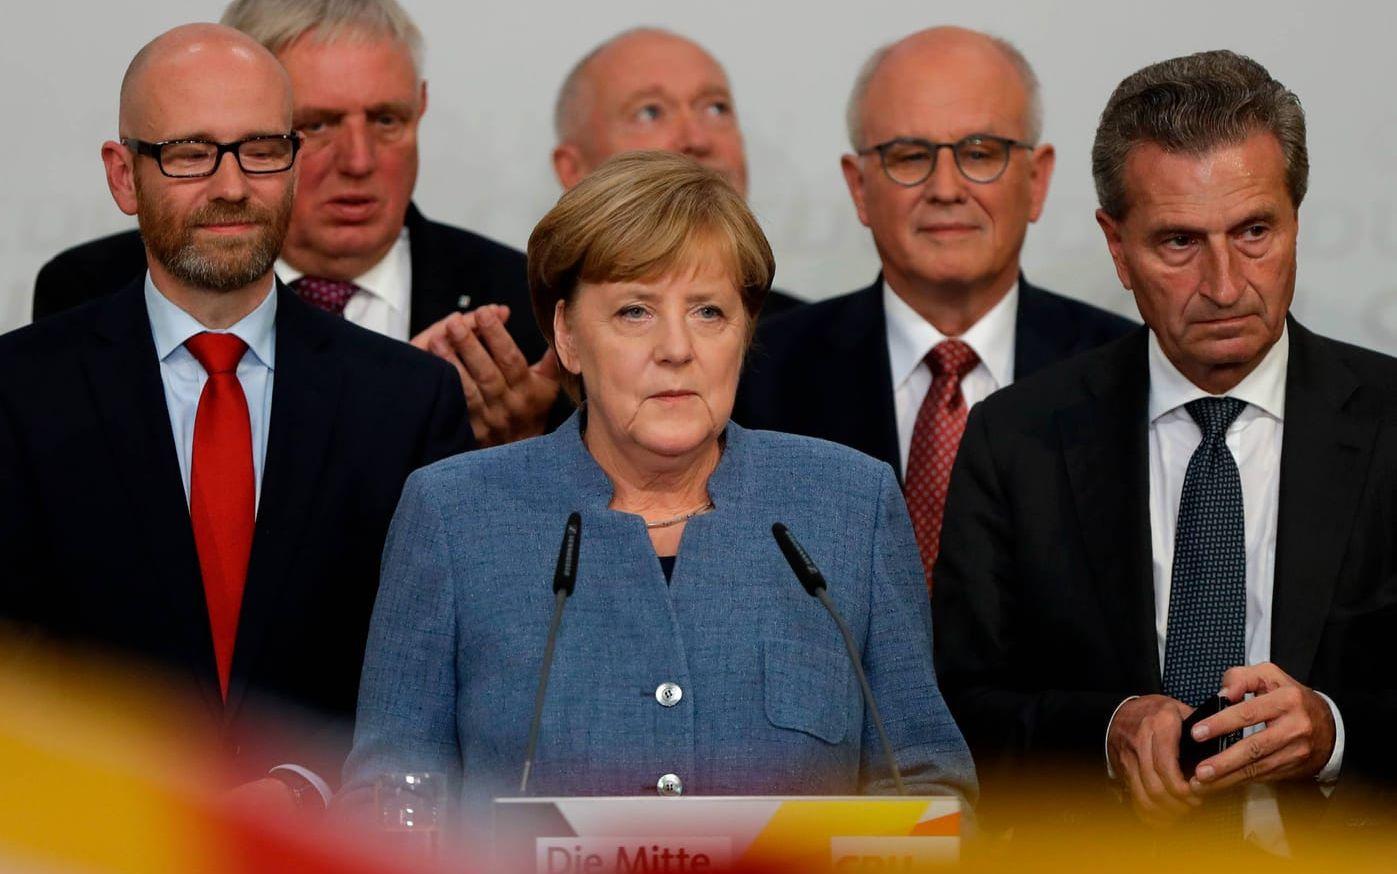 Tysklands förbundskansler Angela Merkel höll ett tal efter den första valprognosen där hon meddelade att hon nått målet för att bilda regering. Bild: TT